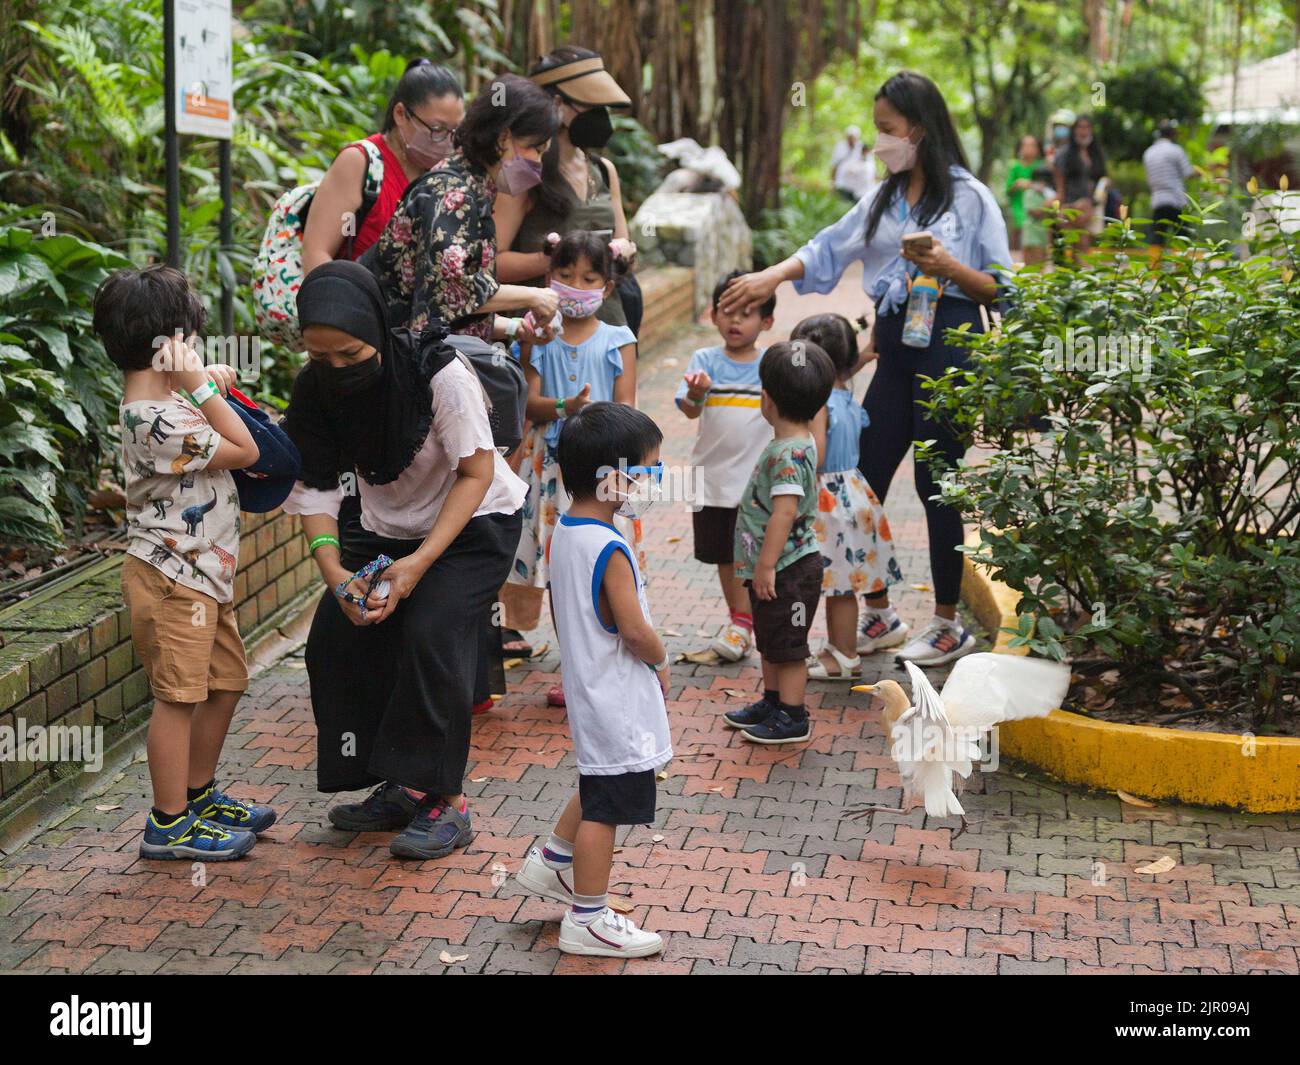 Turisti al parco ornitologico di Kuala Lumpur. Gruppi in visita con i bambini Foto Stock